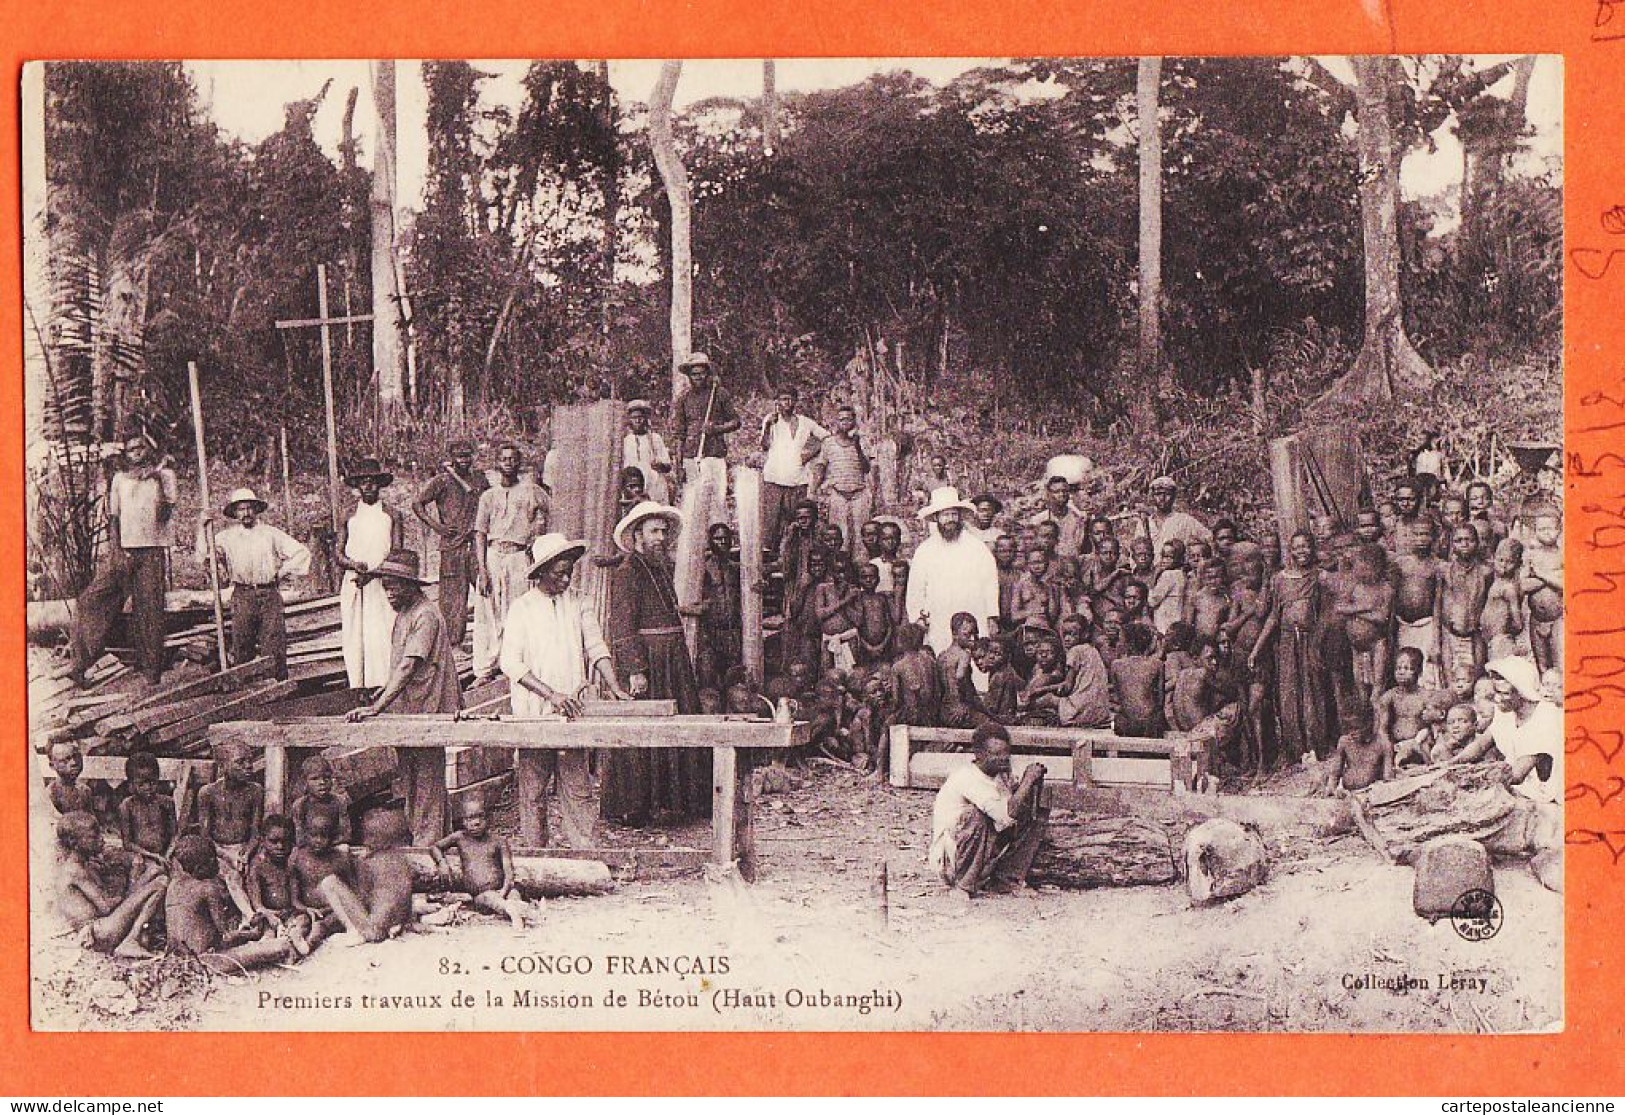 32627 / ♥️ (•◡•) BETOU Haut-Oubanghi Congo Français ◉ Premier Travaux Mission ◉ Collection LERAY 82 Mission Mgr AUGOUARD - Congo Français